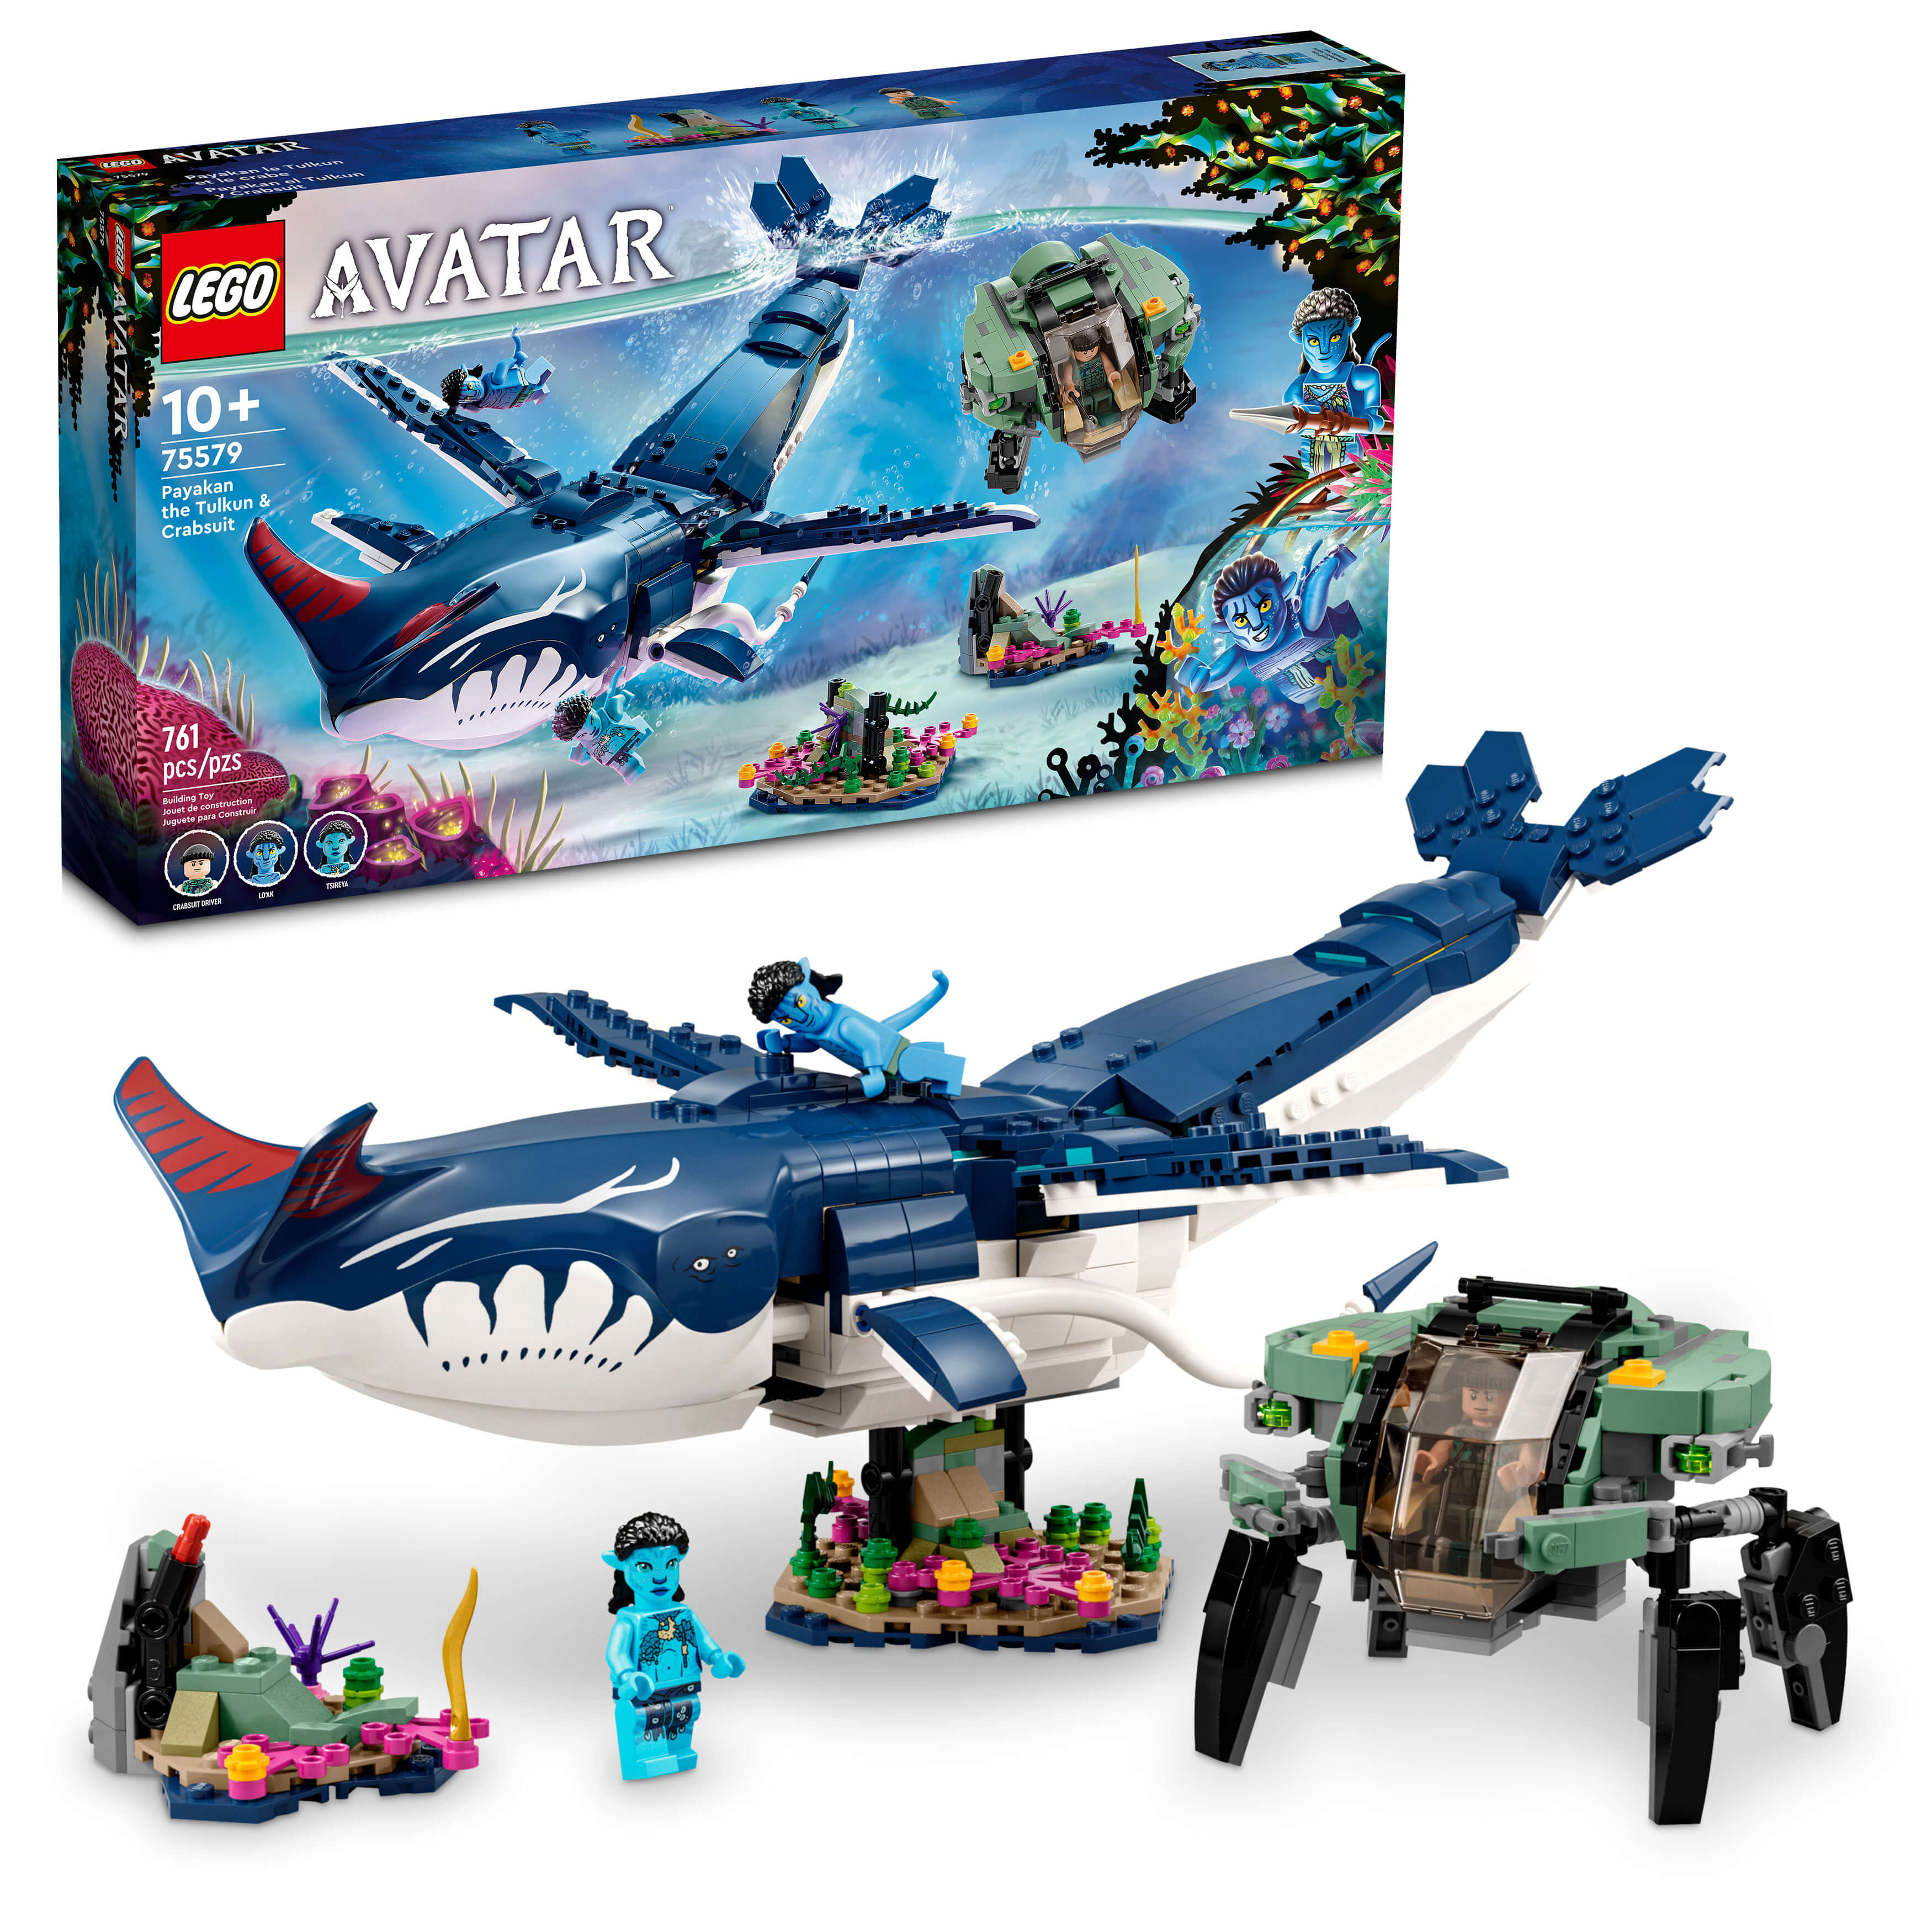 LEGO® Avatar Payakan the Tulkun & Crabsuit 75579 Building Toy Set (761 Pieces)